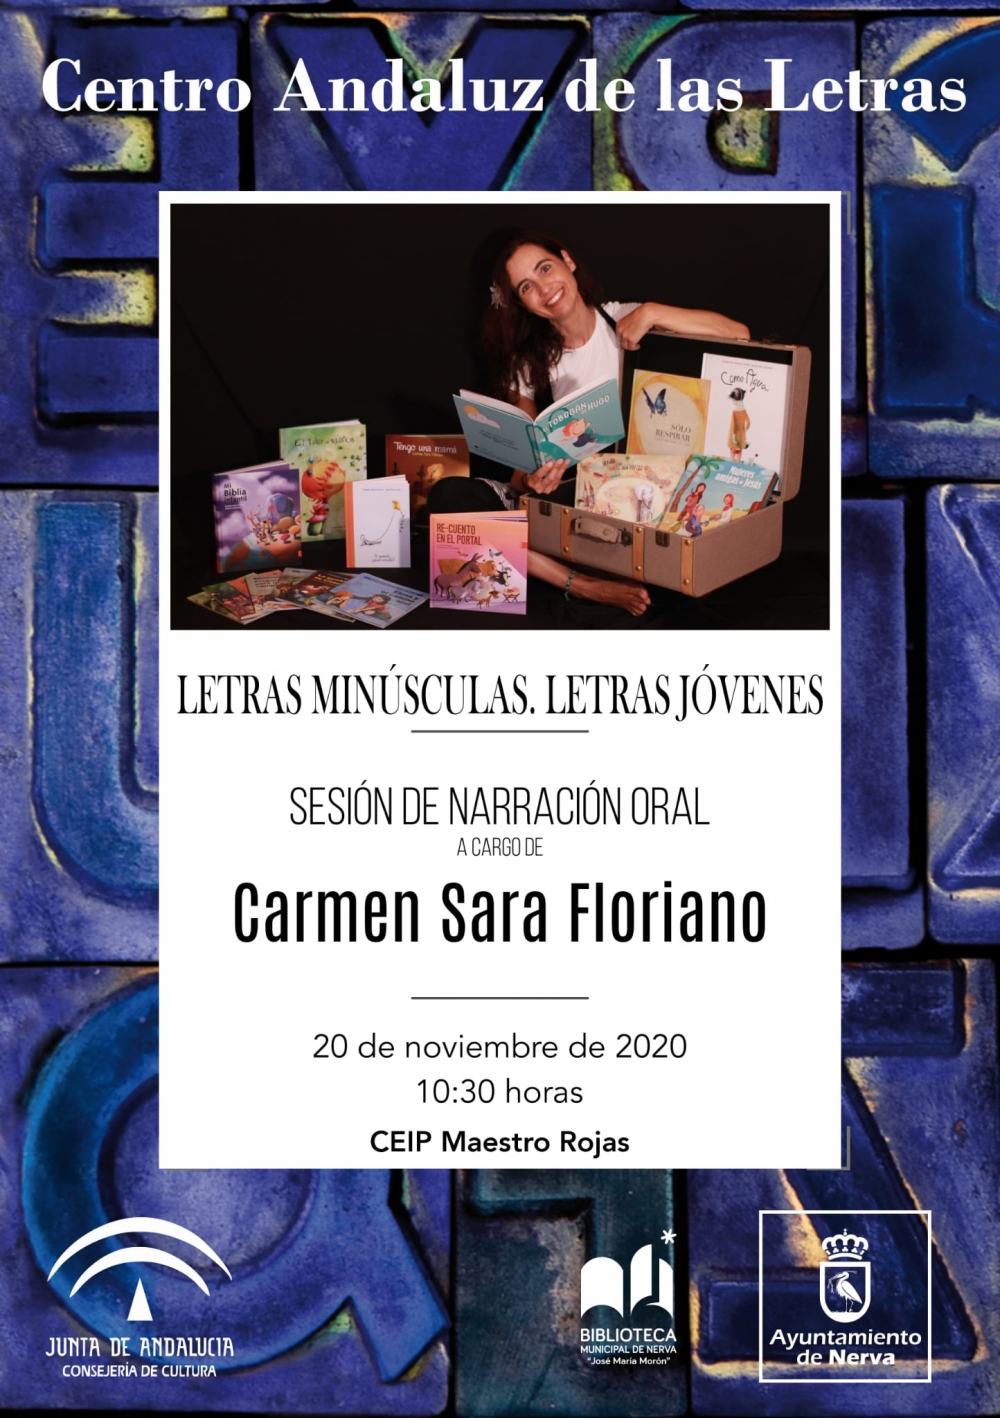 Sesión de narración oral con Carmen Sara